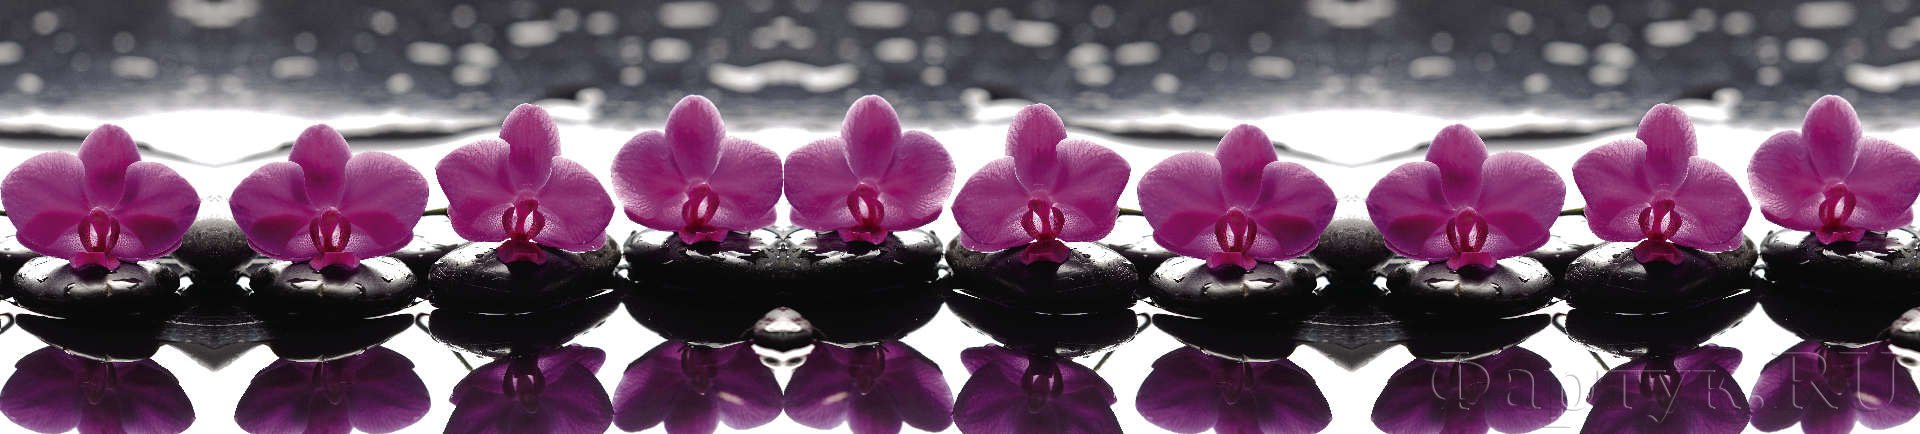 Фиолетовые орхидеи на камнях